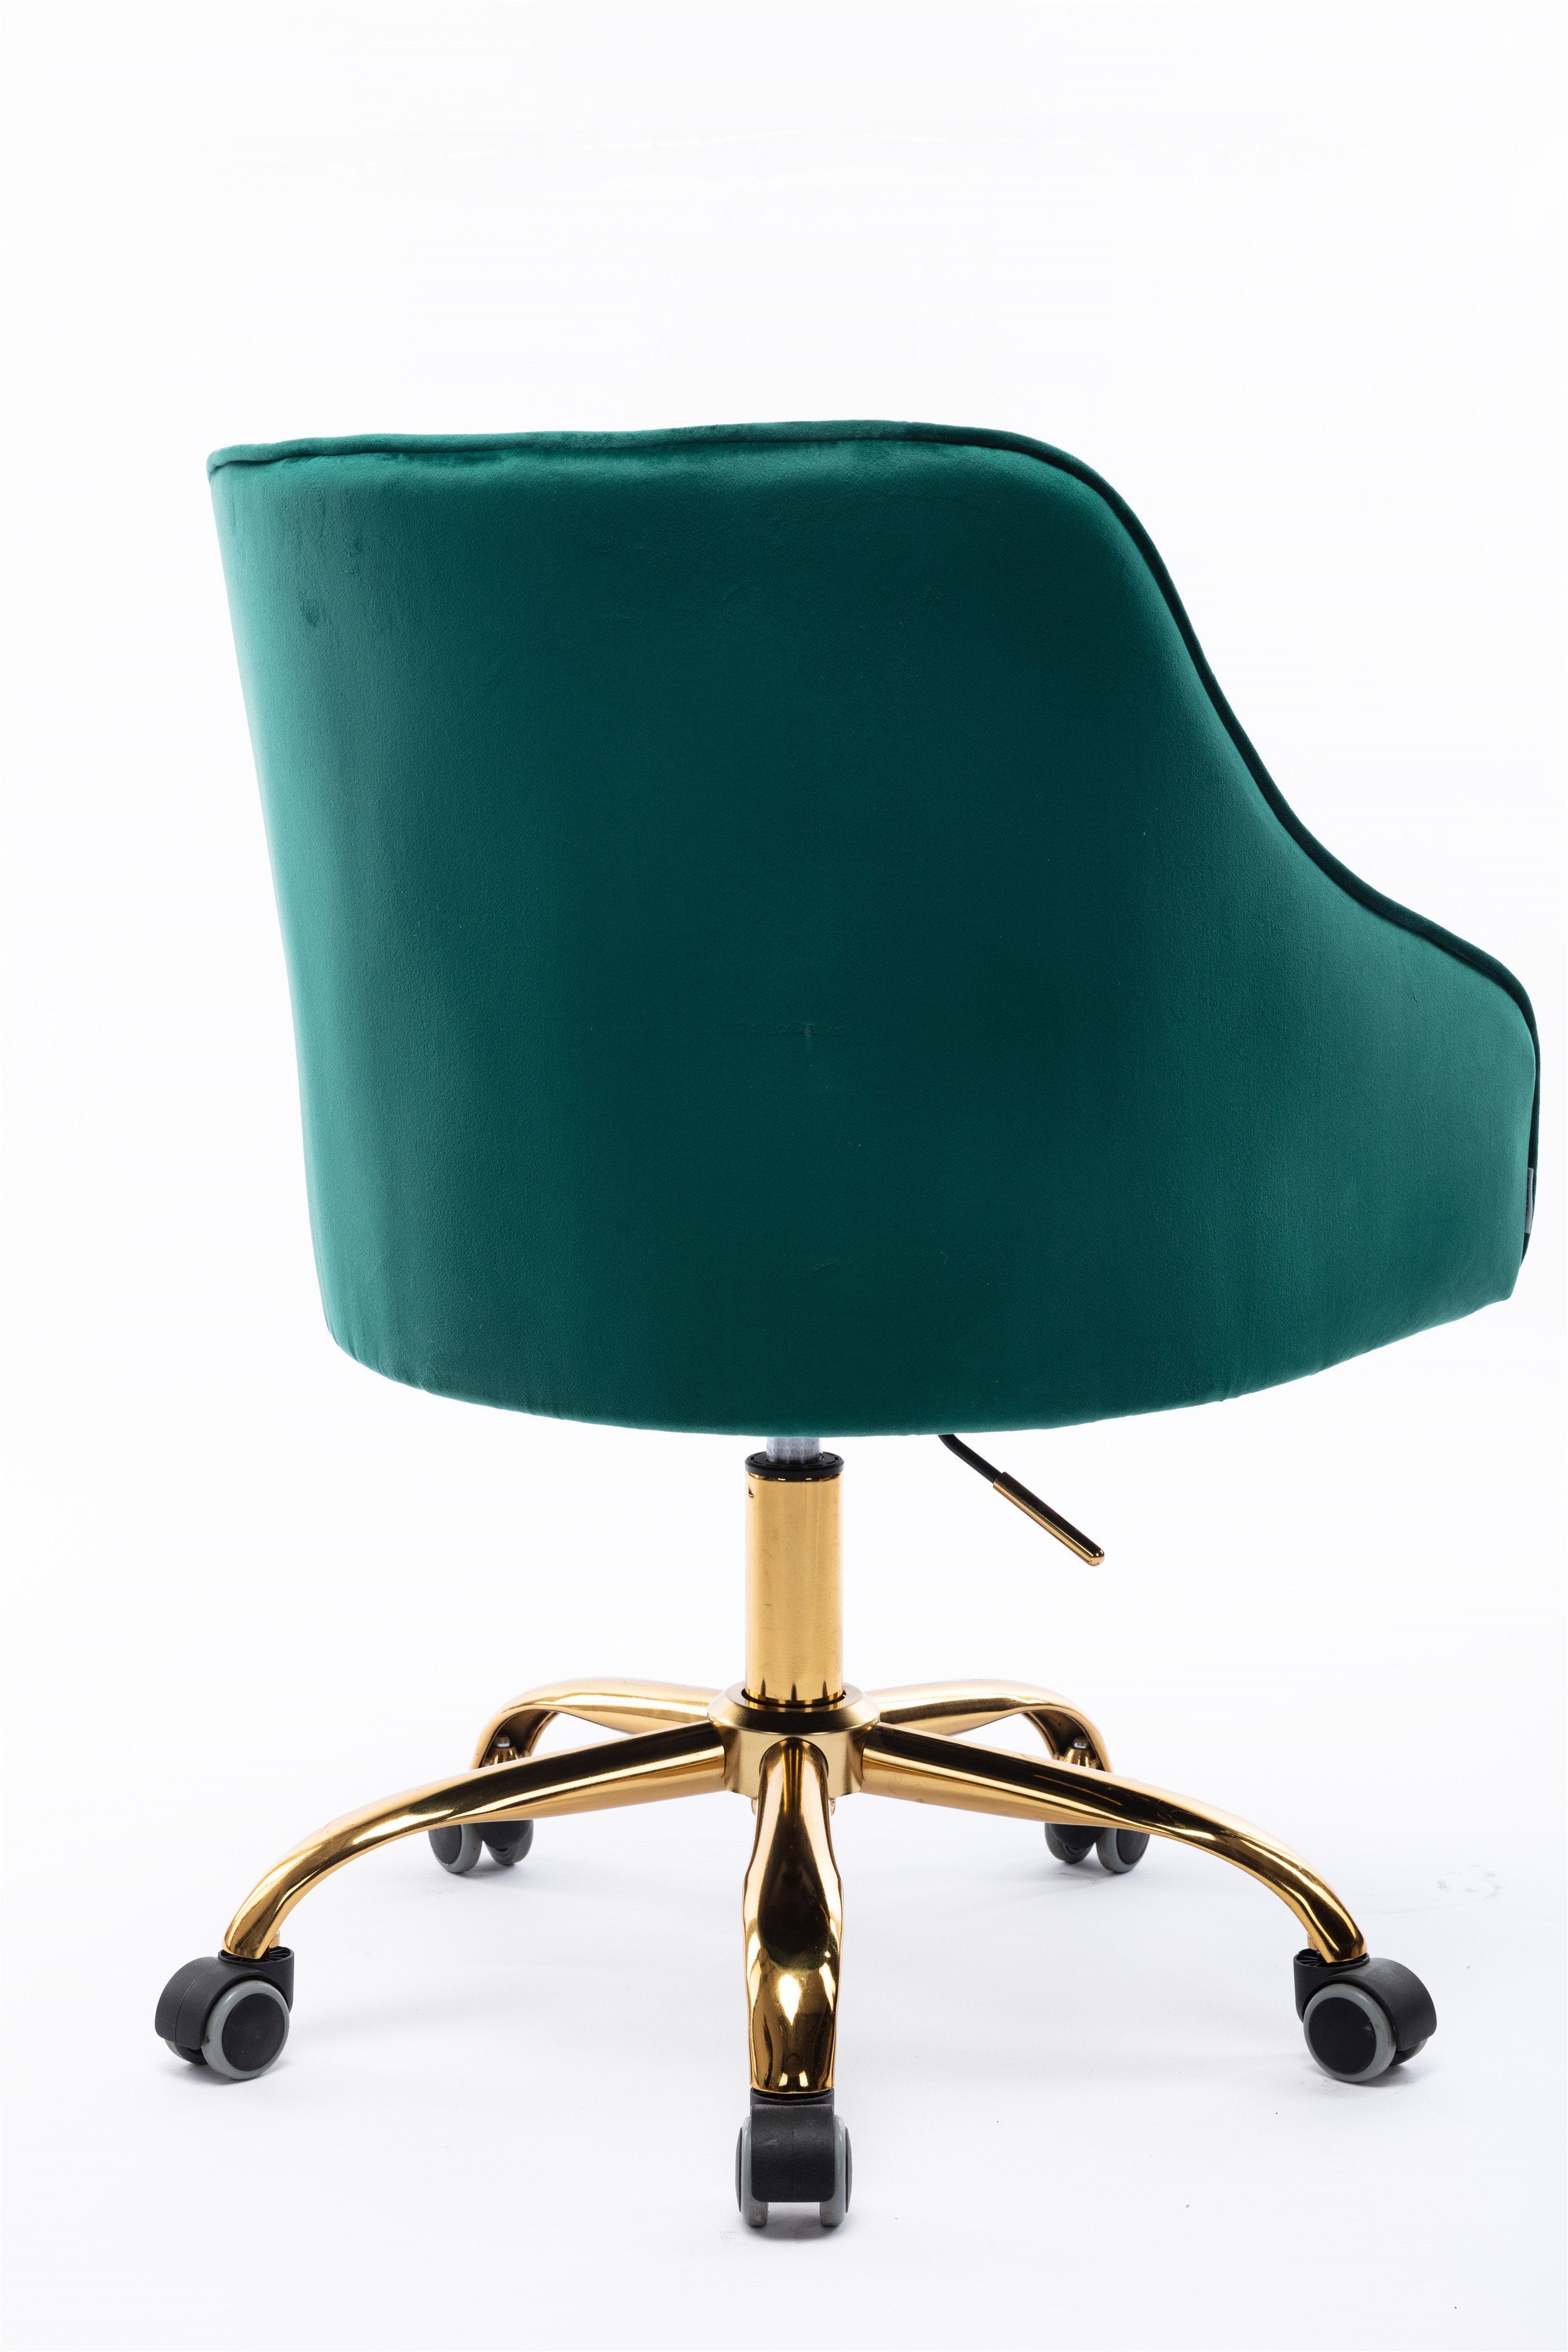 Bürostuhl (360° hübscher höhenverstellbar), Bürostuhl, Samt Stuhl, Schminkstuhl, grün OKWISH goldener schicker drehbar, Stoff-Schreibtischstuhl Stuhl